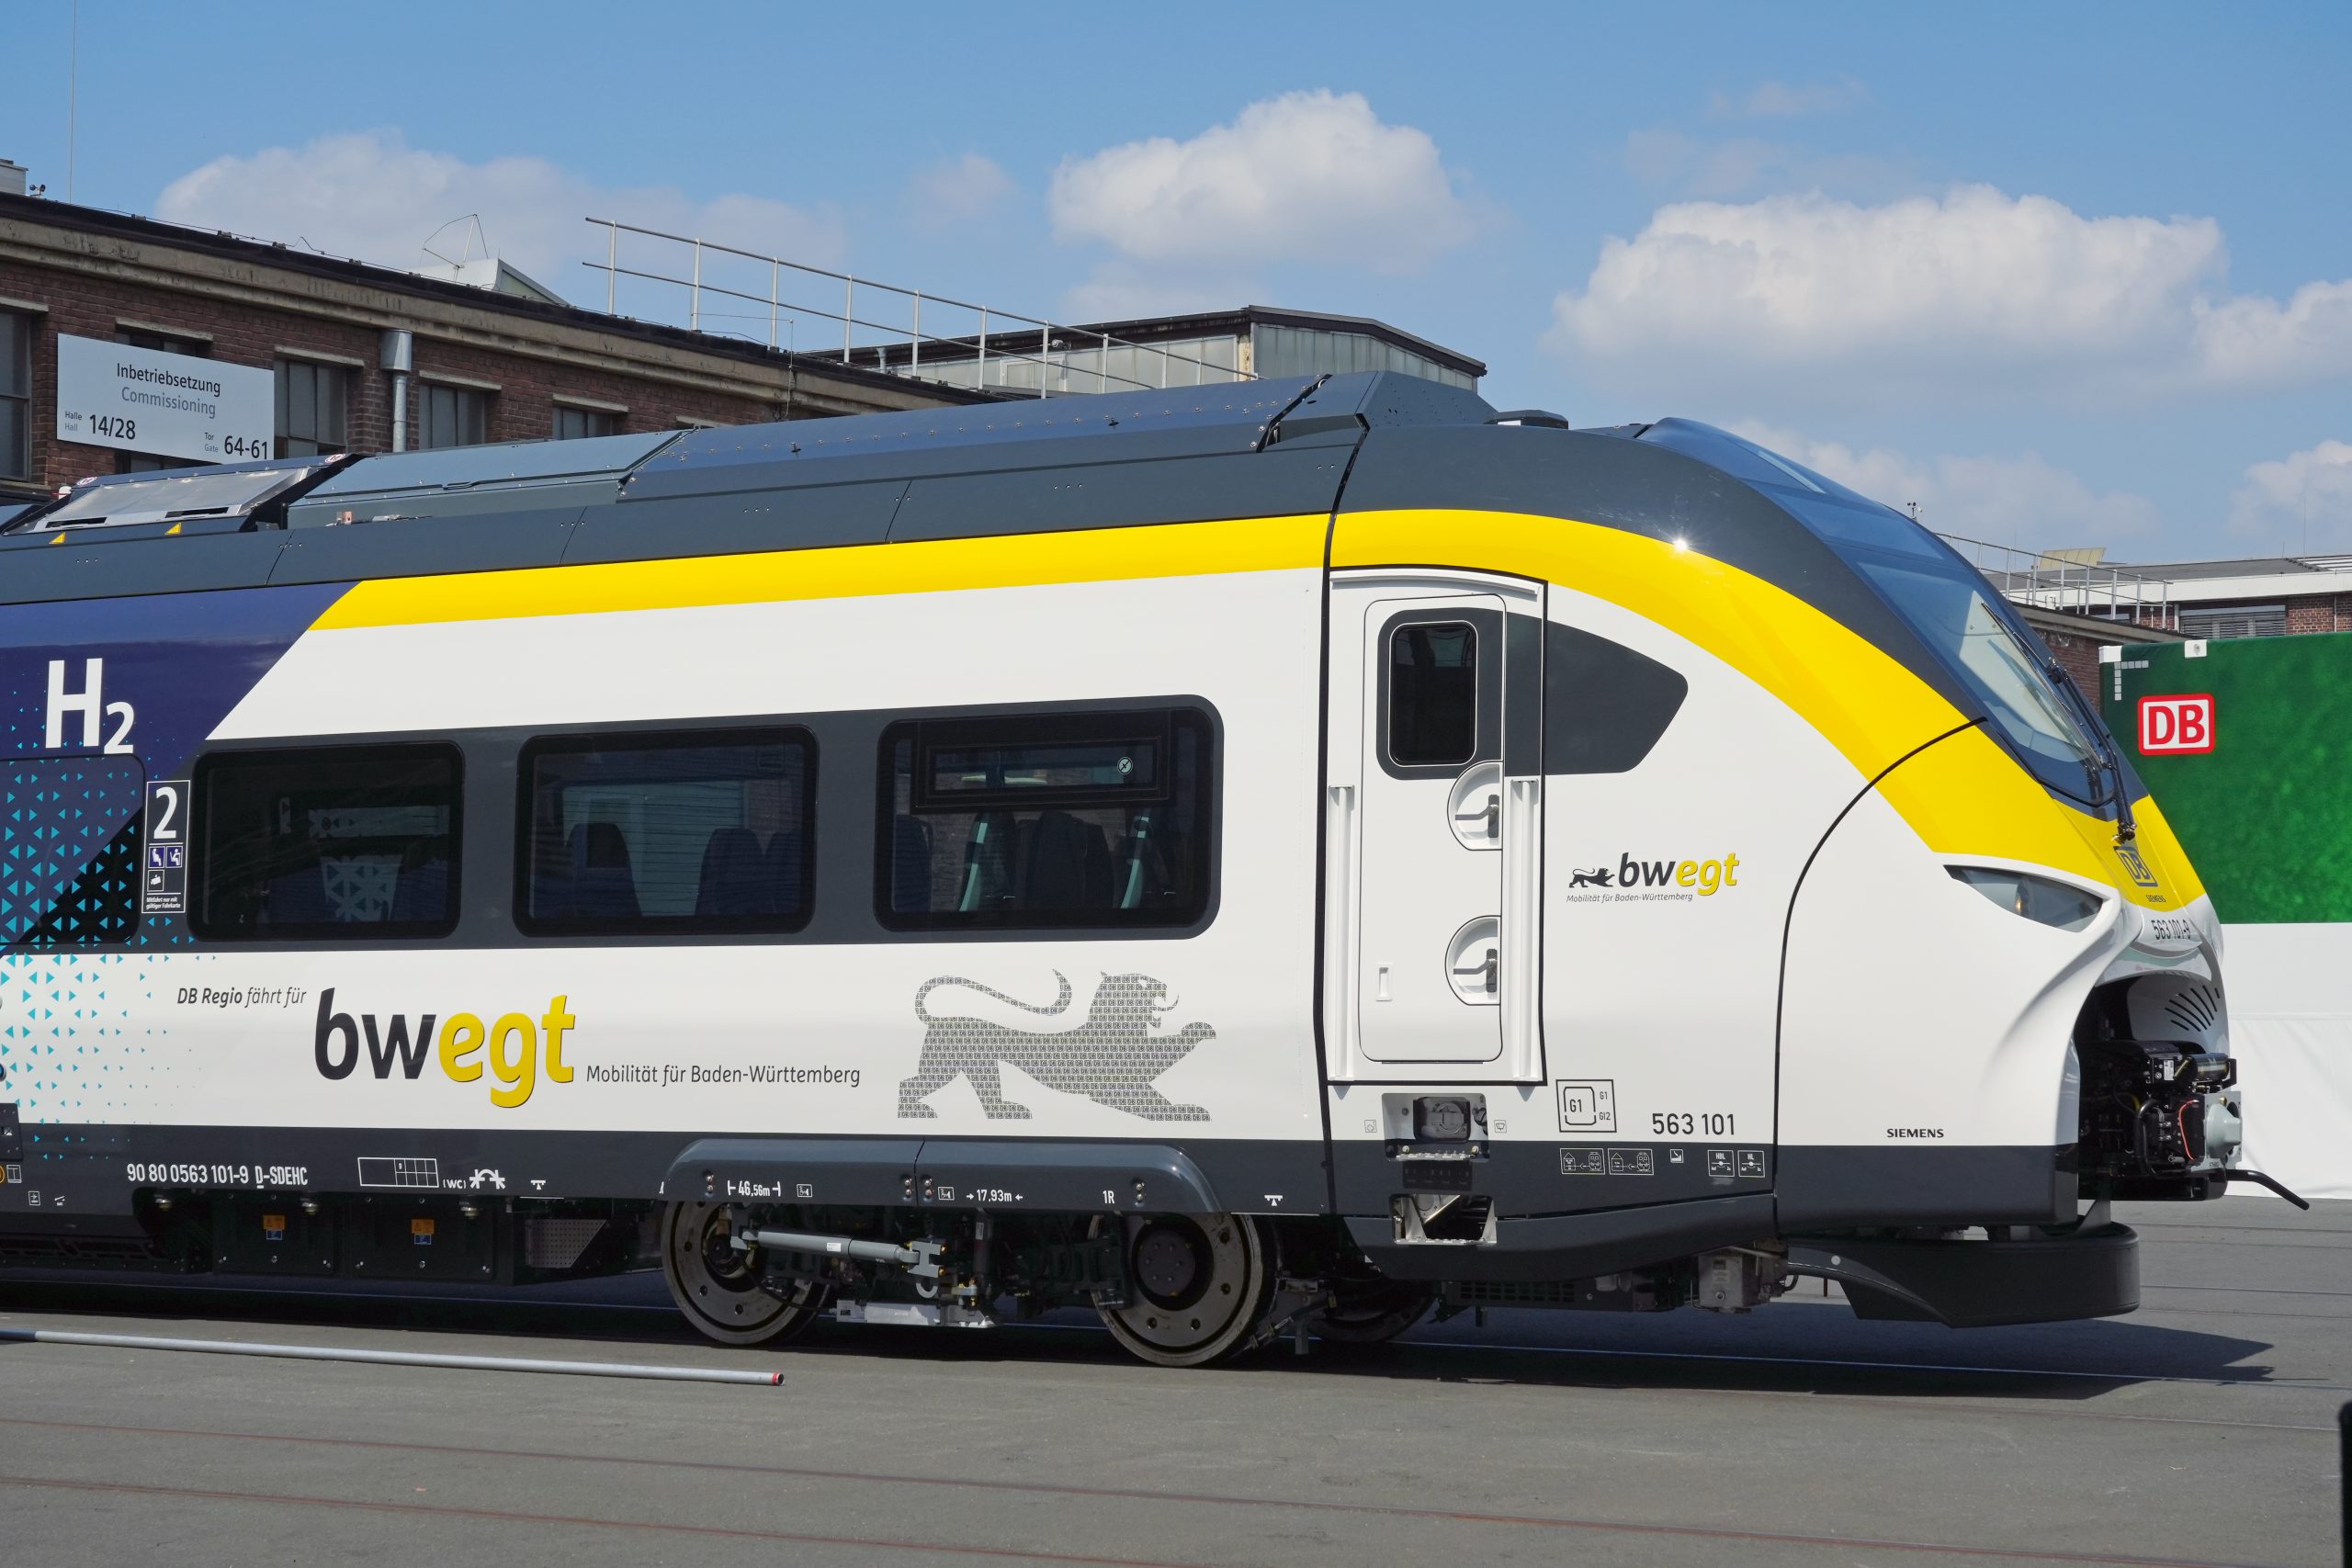 Premiere: Deutsche Bahn and Siemens Mobility present new hydrogen train and hydrogen storage trailer